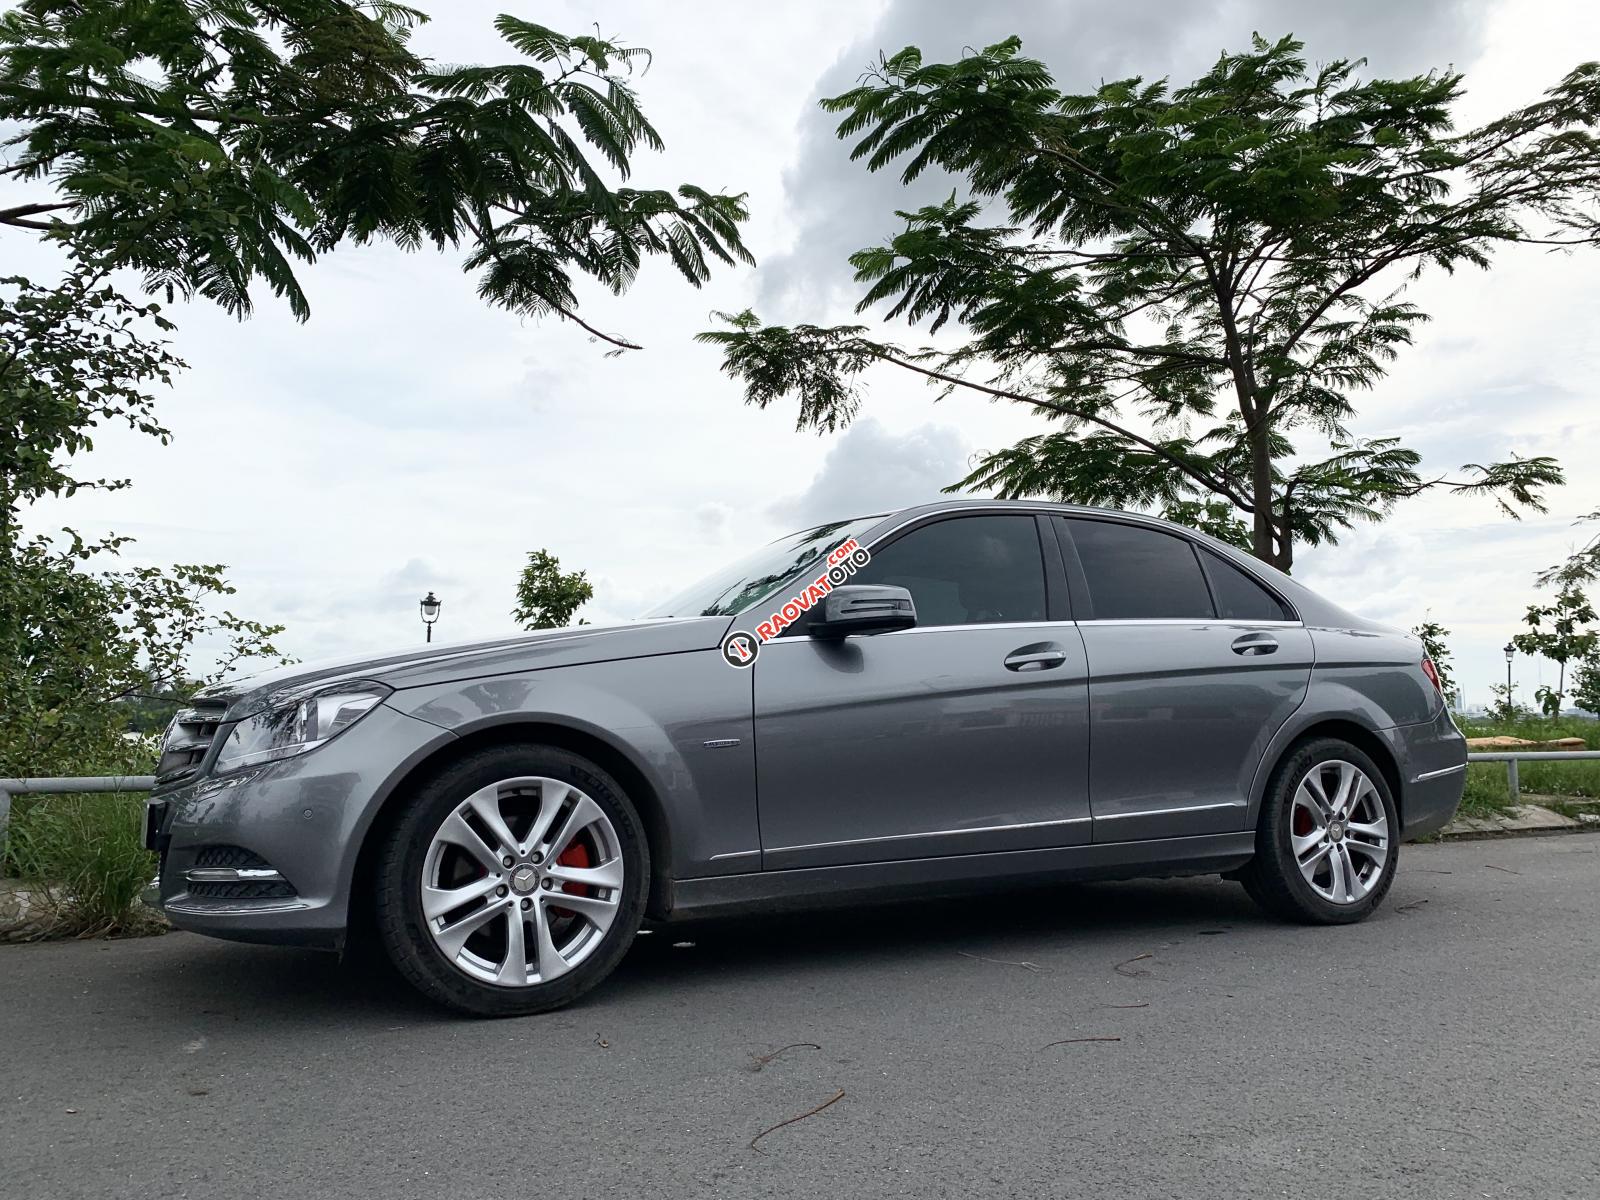 Cần bán gấp Mercedes đời 2012 sx 2011 giá tốt nhất Việt Nam-3